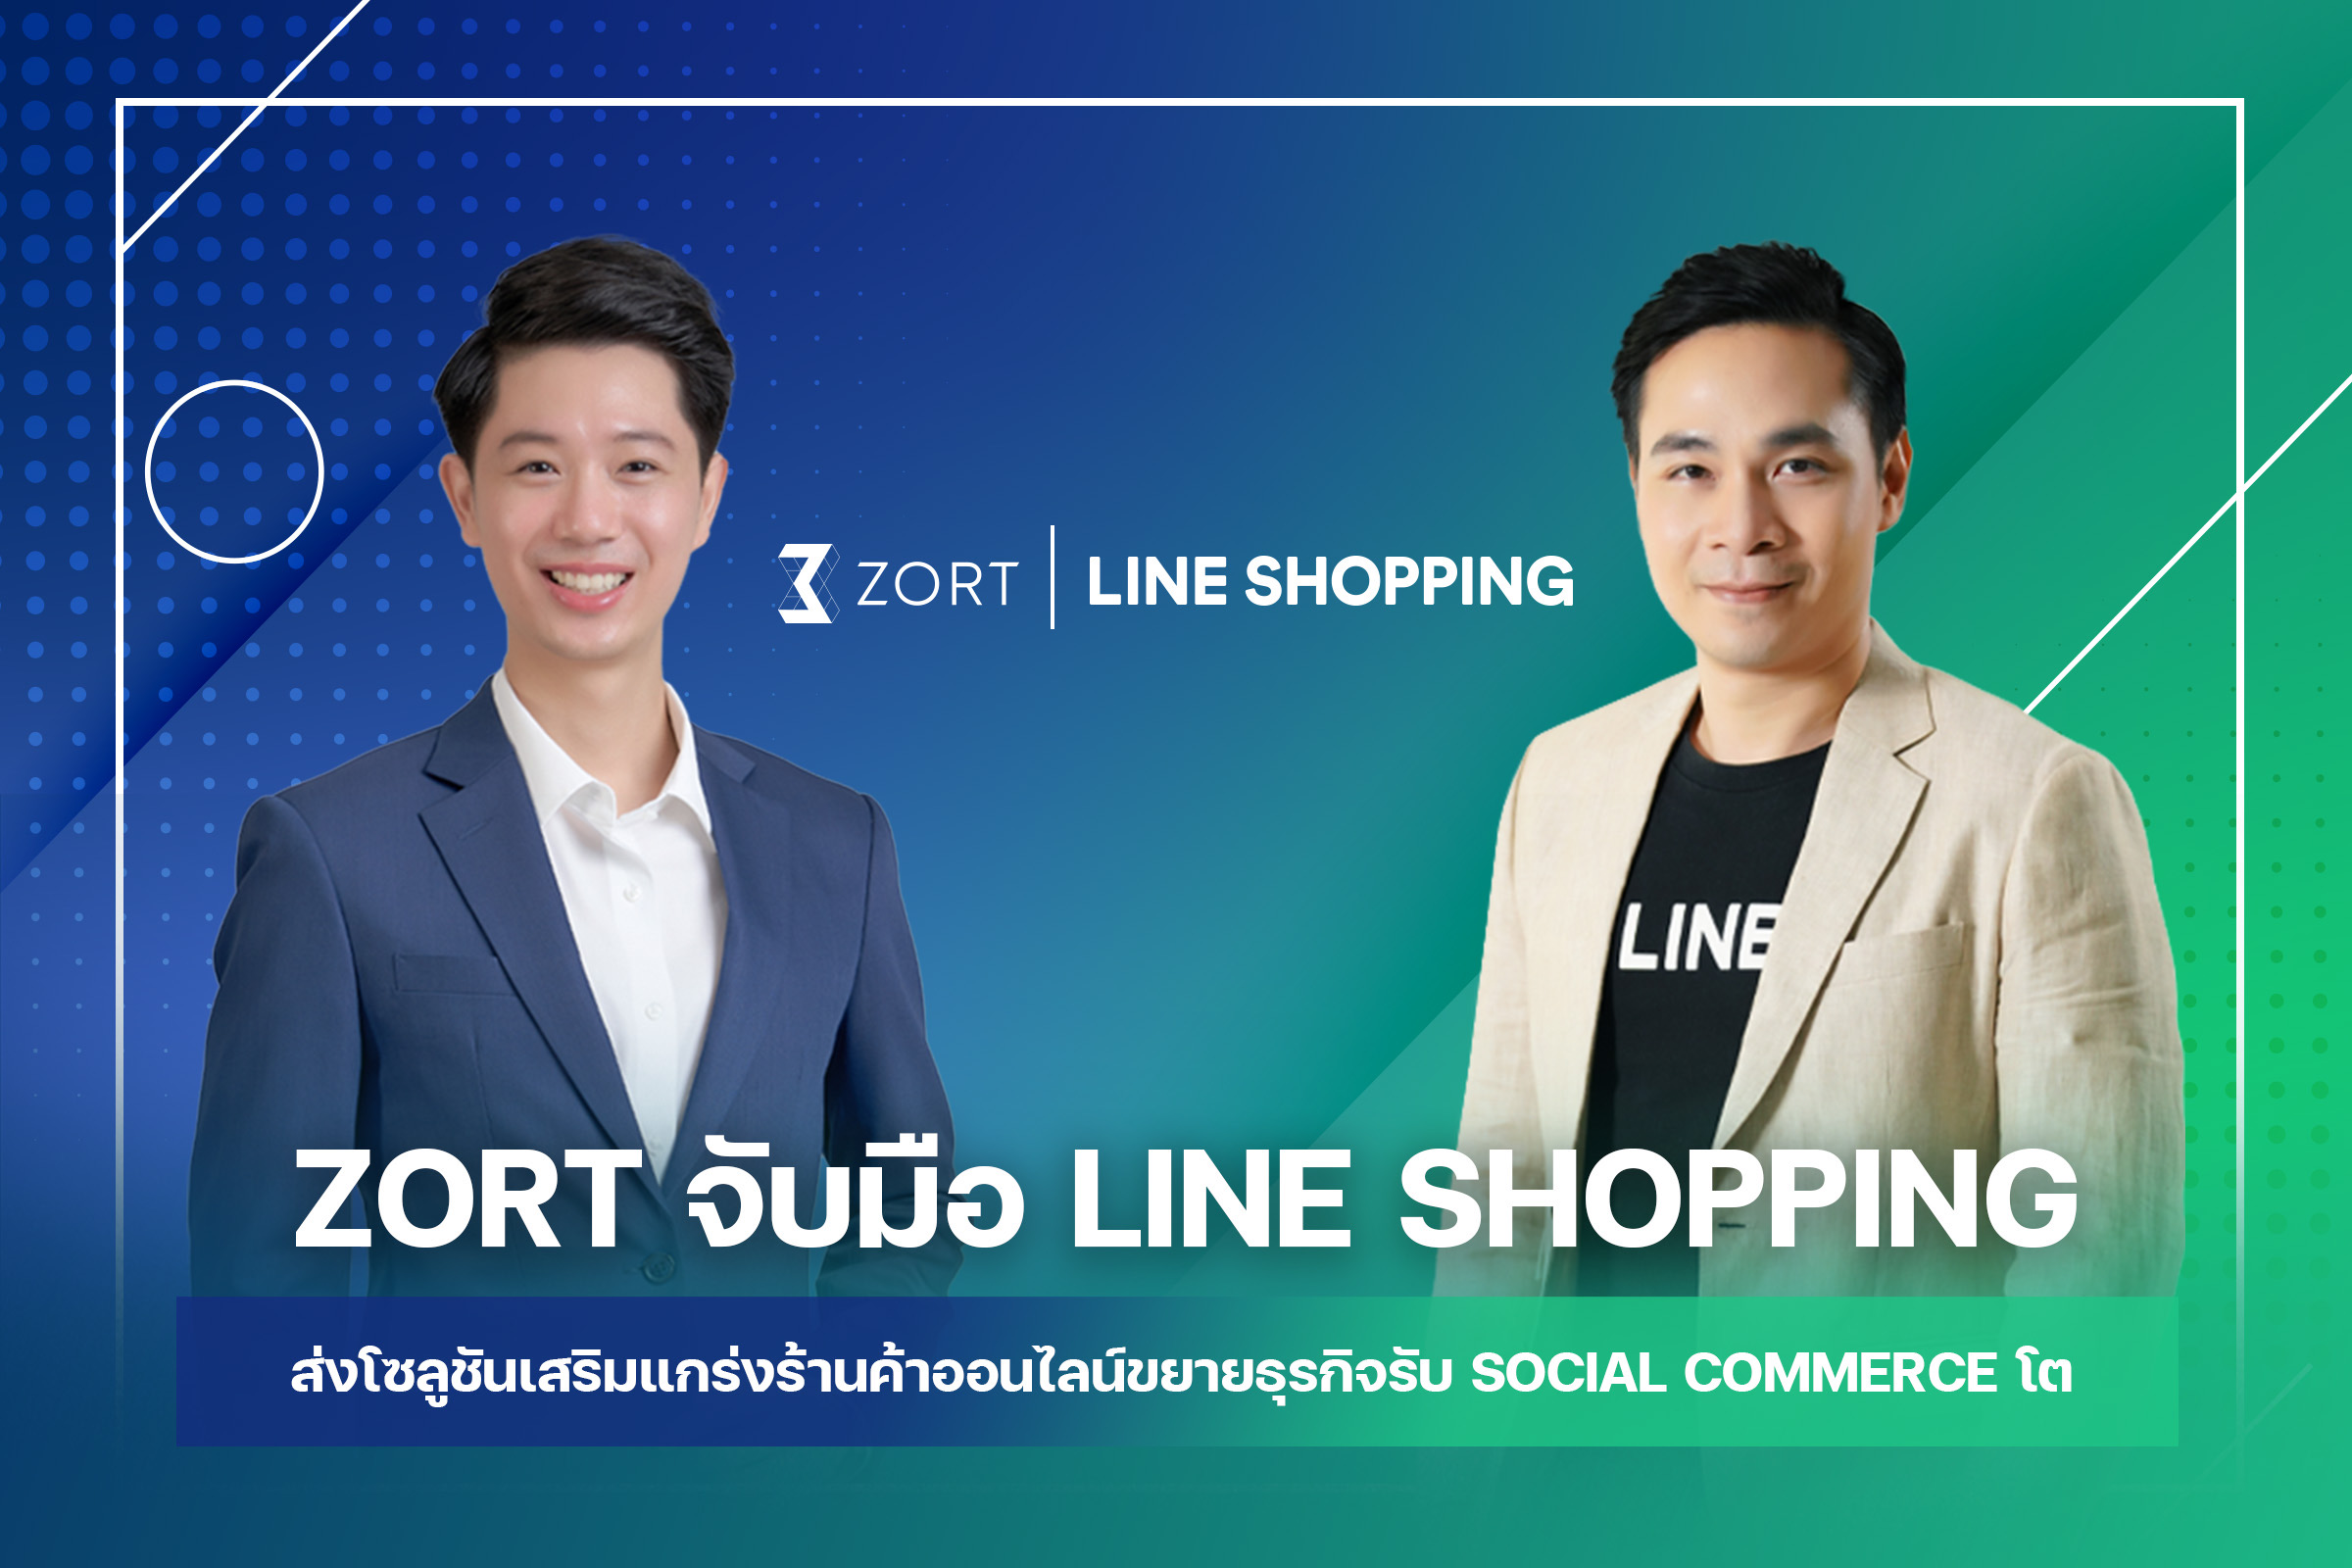 LINE SHOPPING จับมือ ZORT ผู้นำระบบจัดการออเดอร์และสต๊อกออนไลน์ ส่งโซลูชันเสริมแกร่งร้านค้าออนไลน์ขยายกิจการ รับ Social Commerce โต